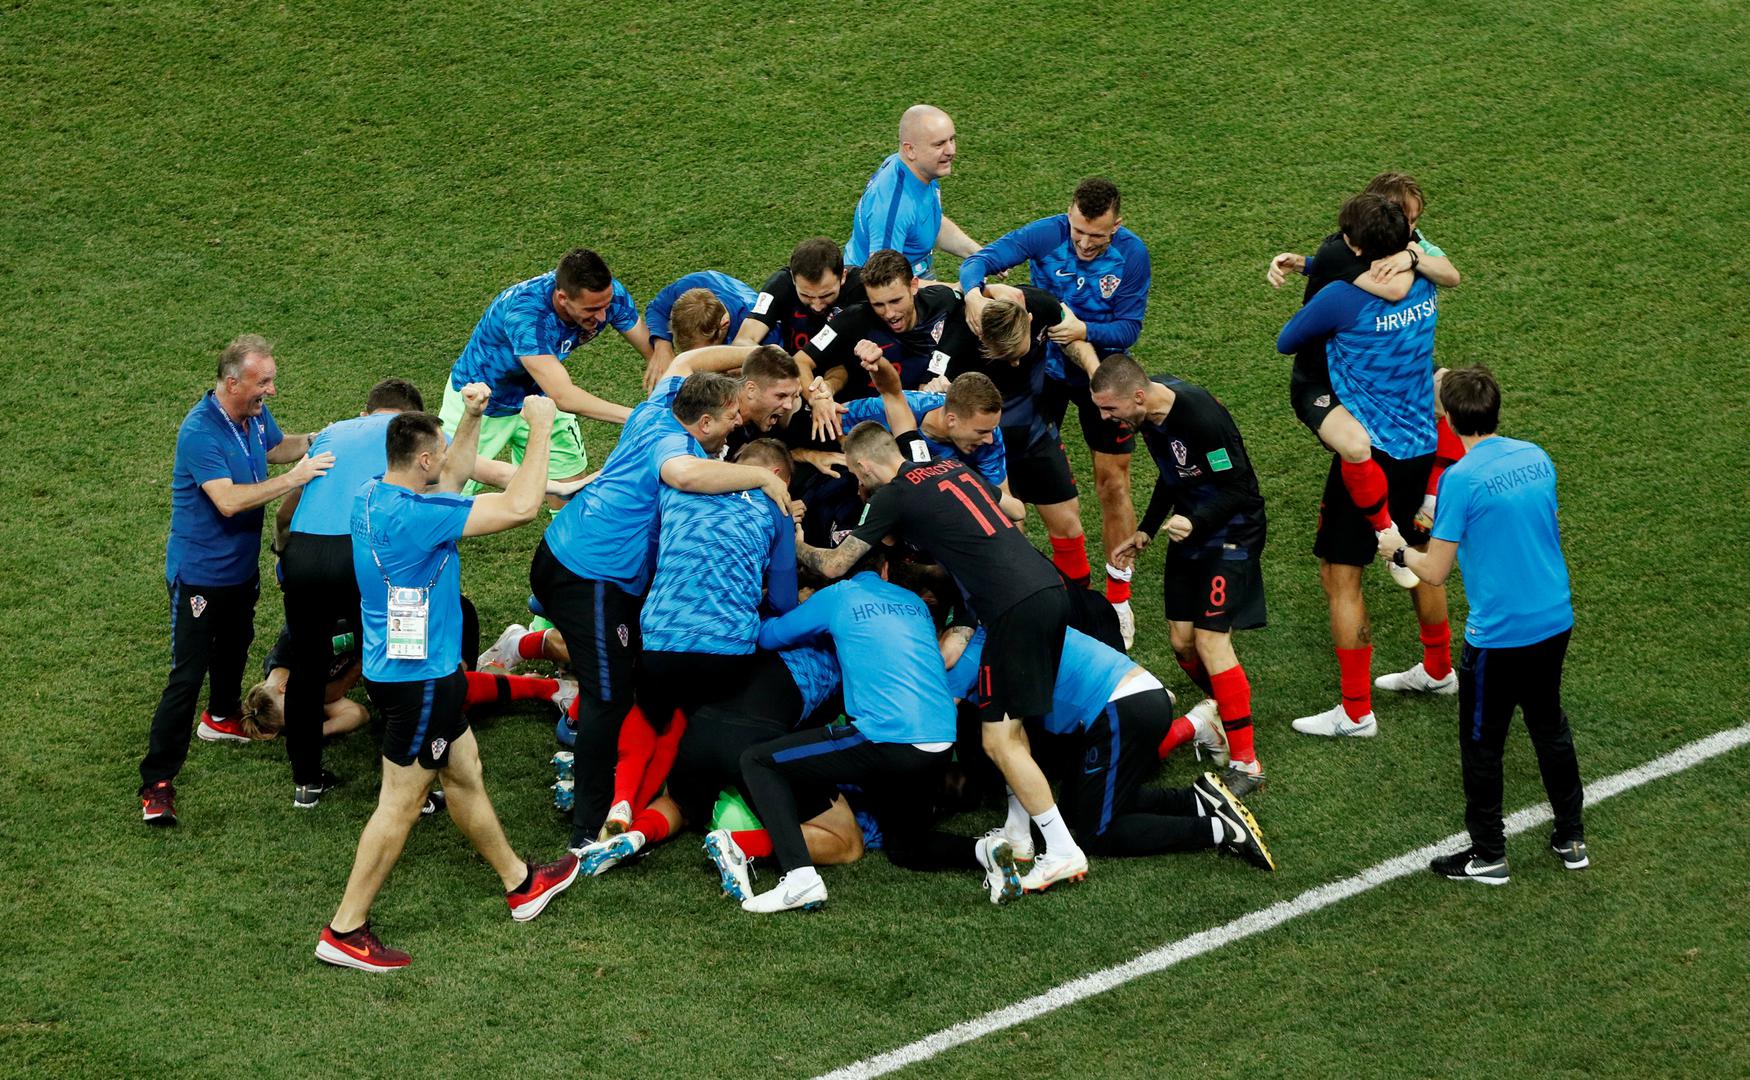 Odmah nakon Rakitićevog gola igrači su potrčali jedni drugima u zagrljaj i veliko slavlje je moglo početi.

